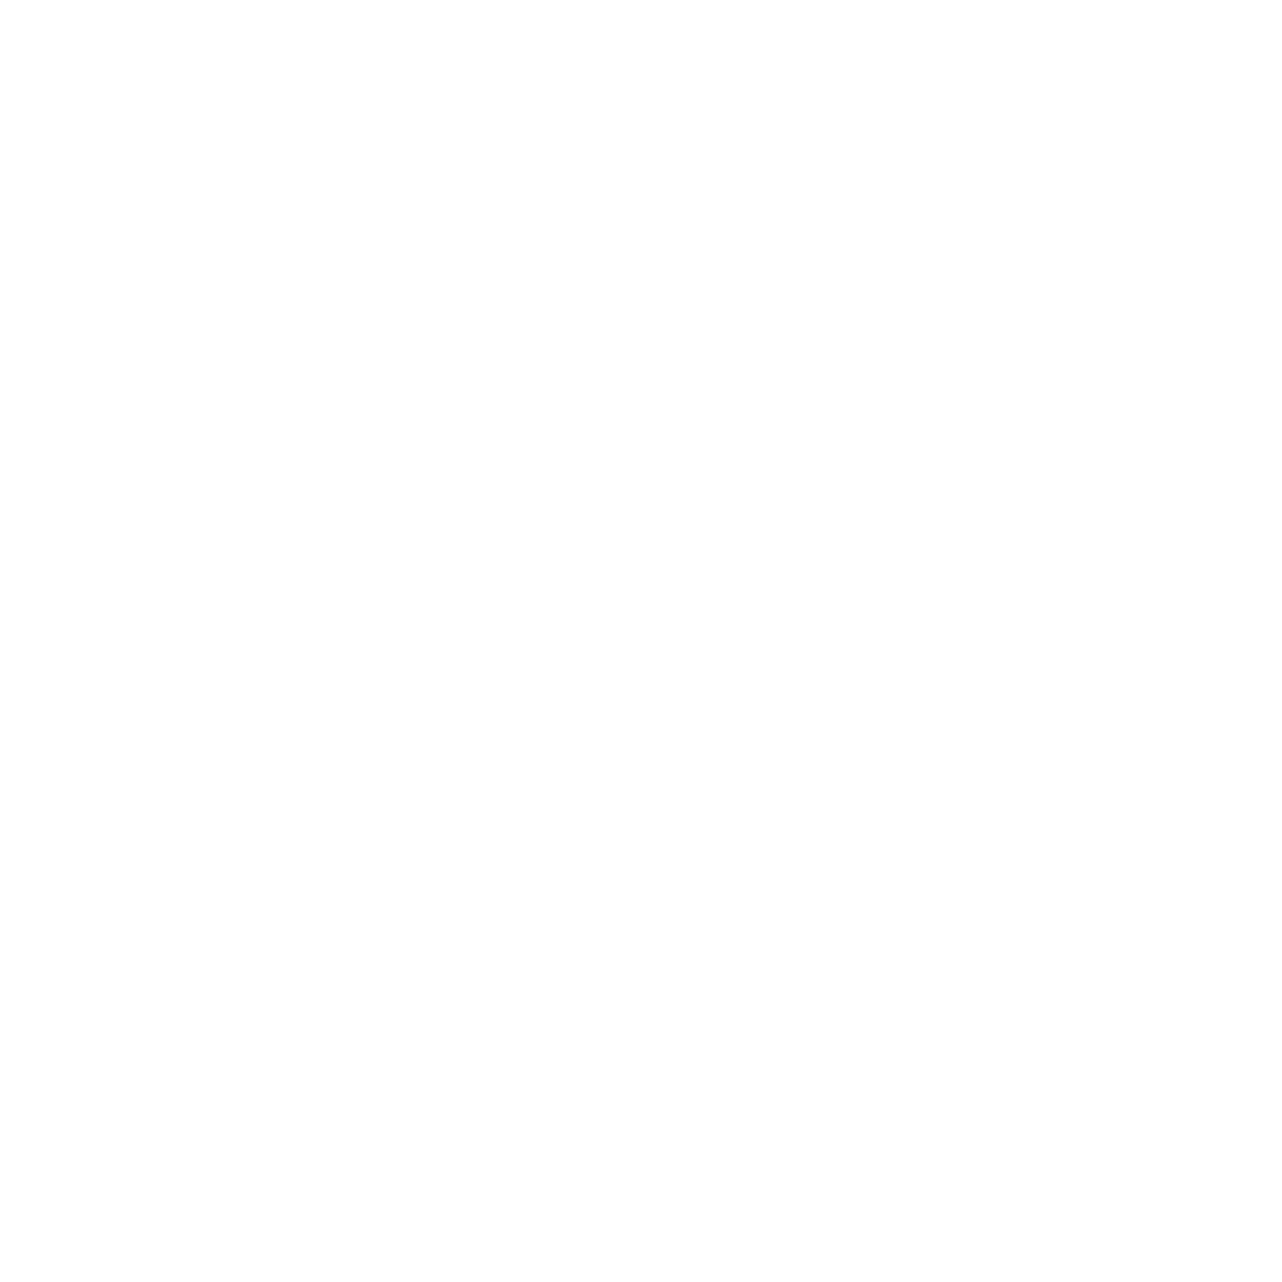 Swedish Export Media